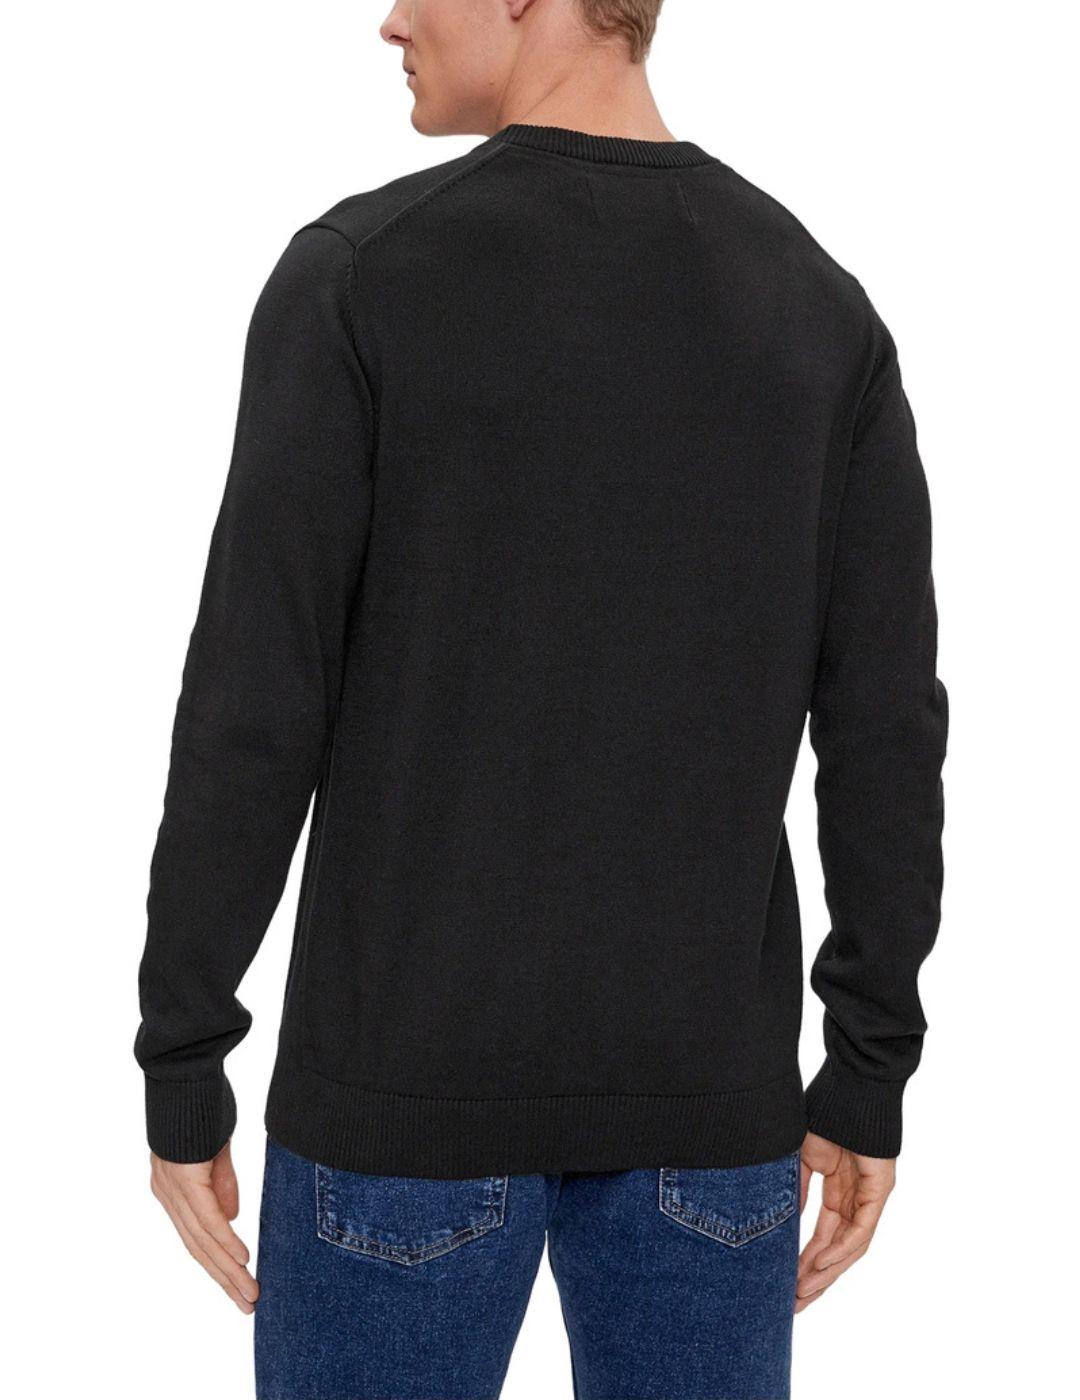 Jersey Calvin Klein de cuello redondo en algodón para hombre